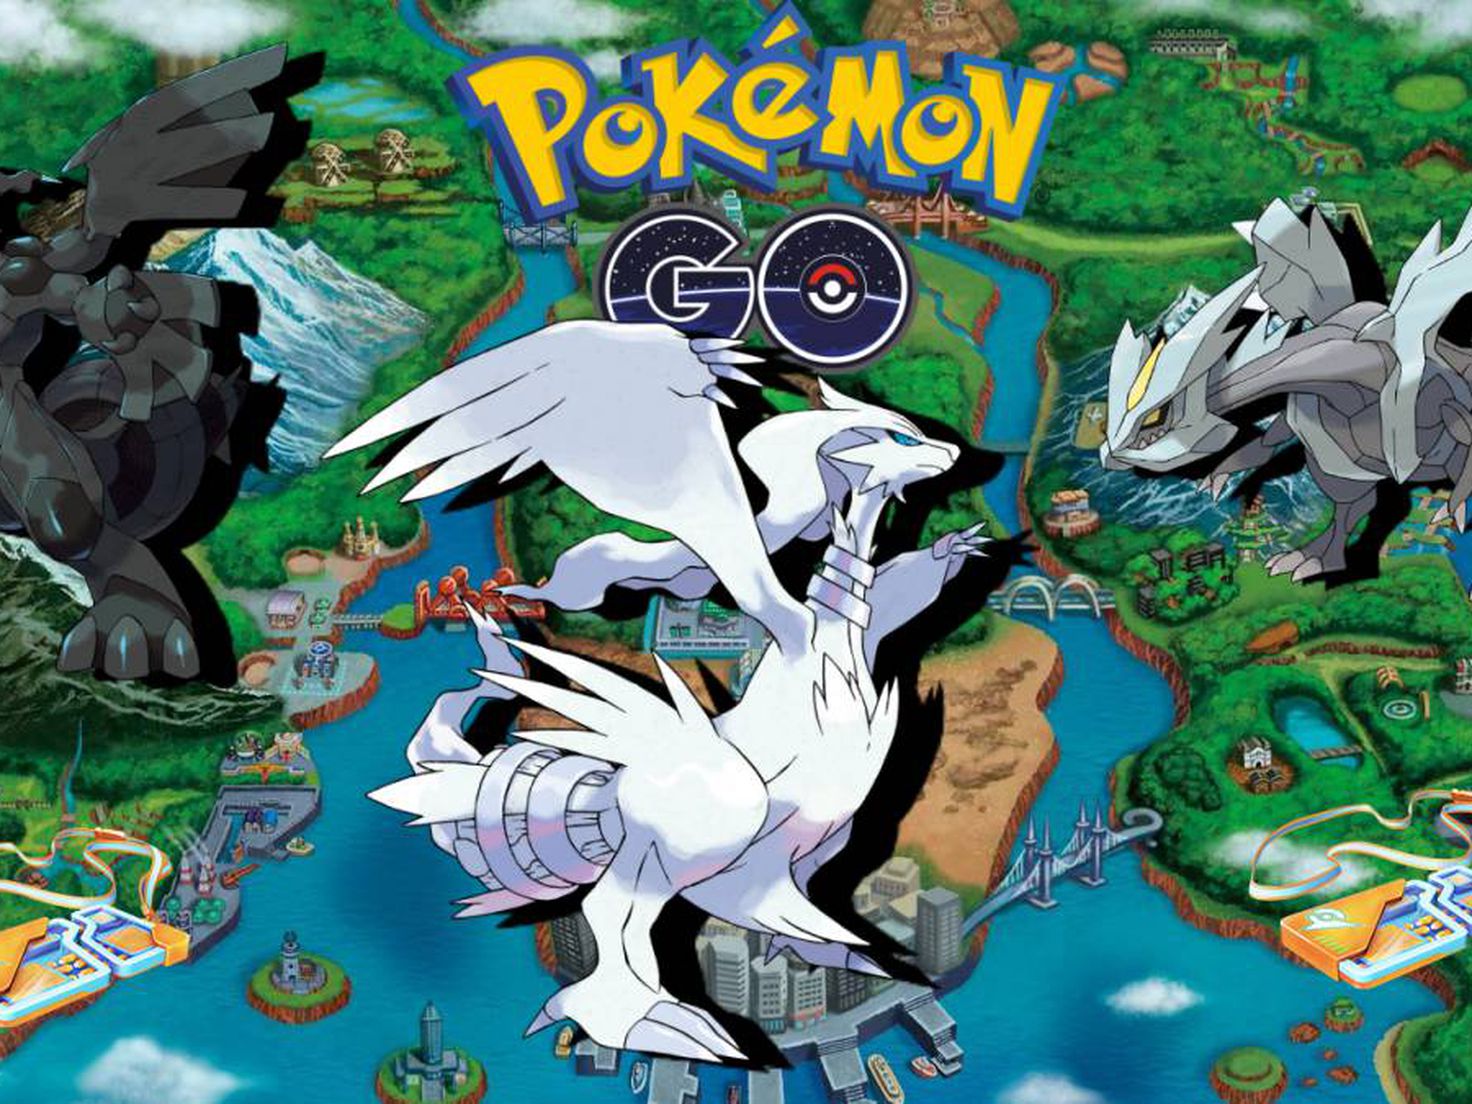 Pokémon Go anuncia Reshiram, Zekrom e mais como novos chefes de Raids